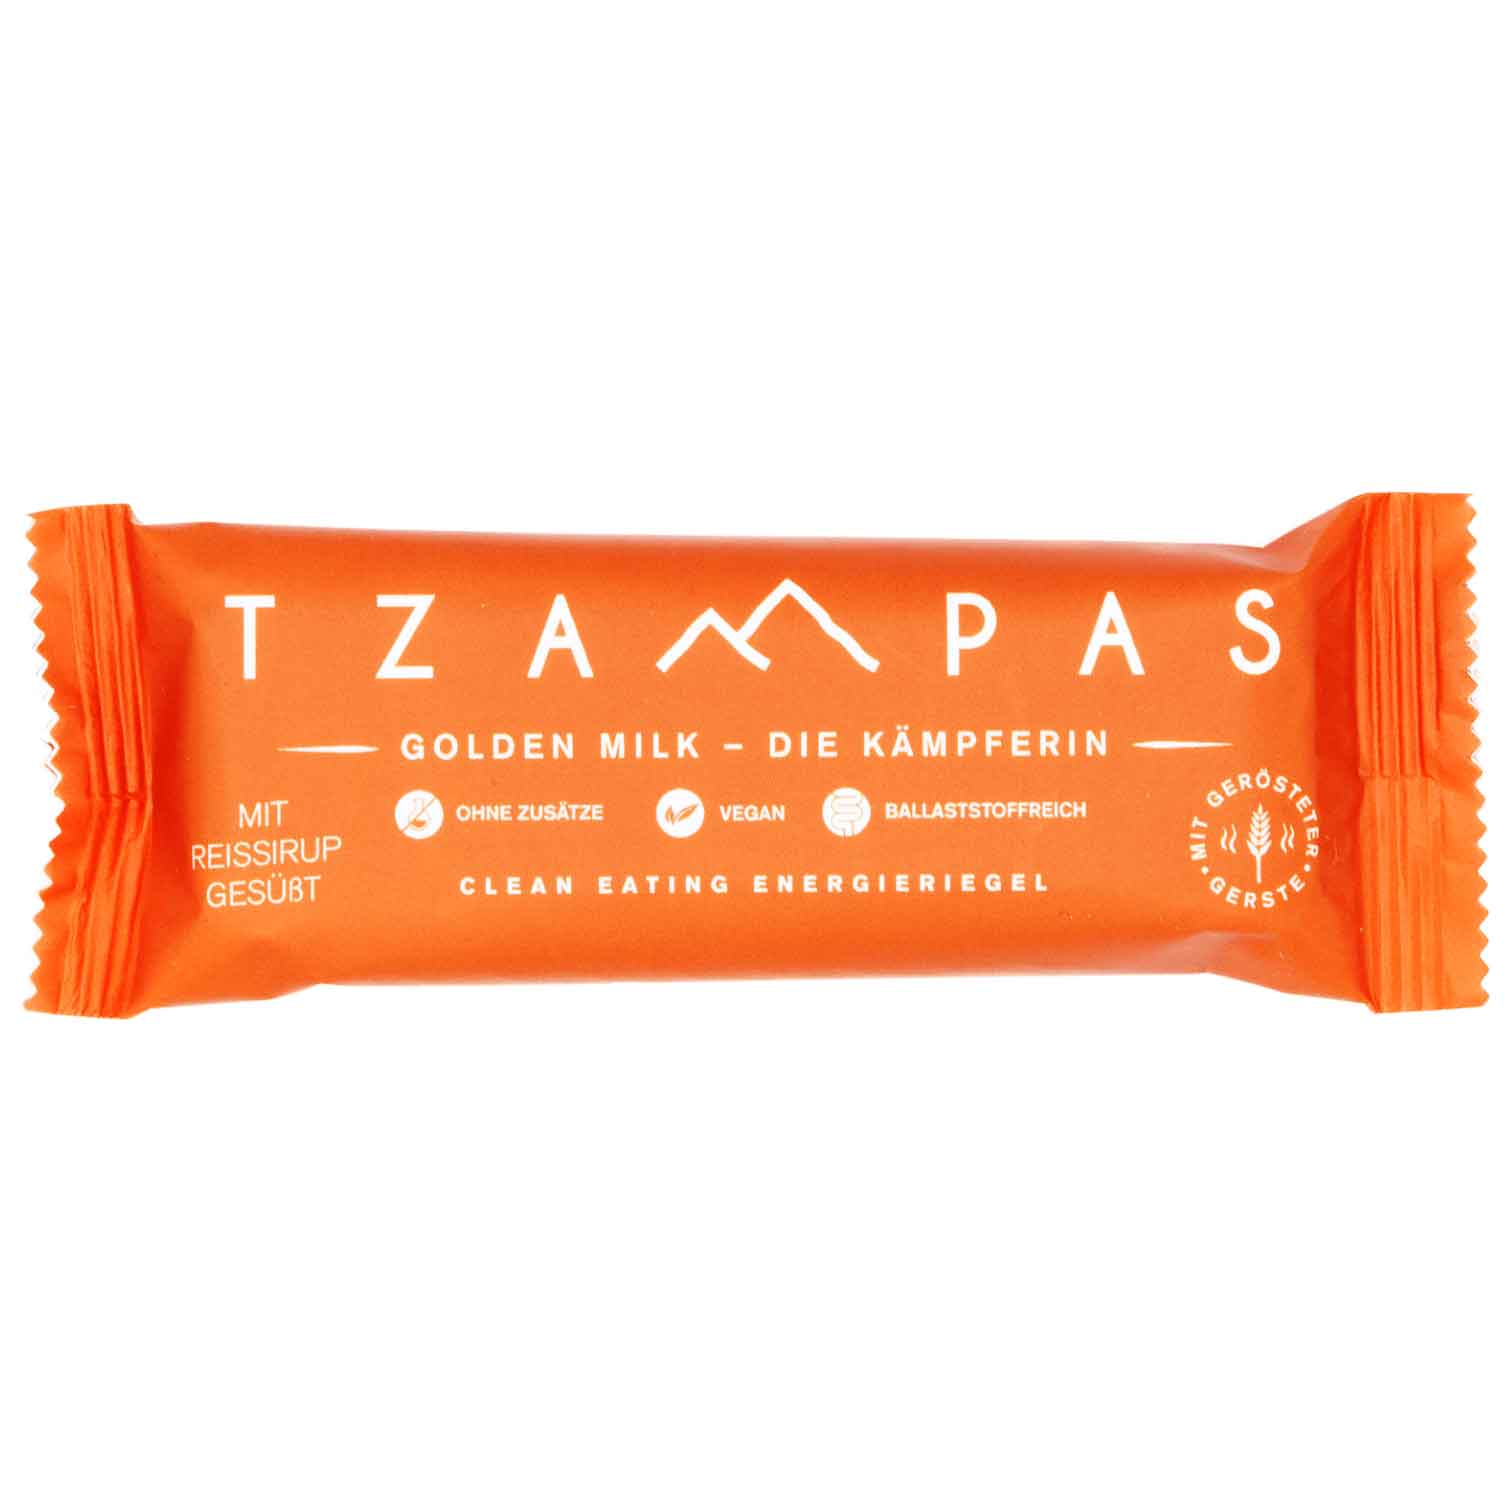 Produktbild von TZAMPAS BIO Golden Milk – Die Kämpferin - Energieriegel - 40g